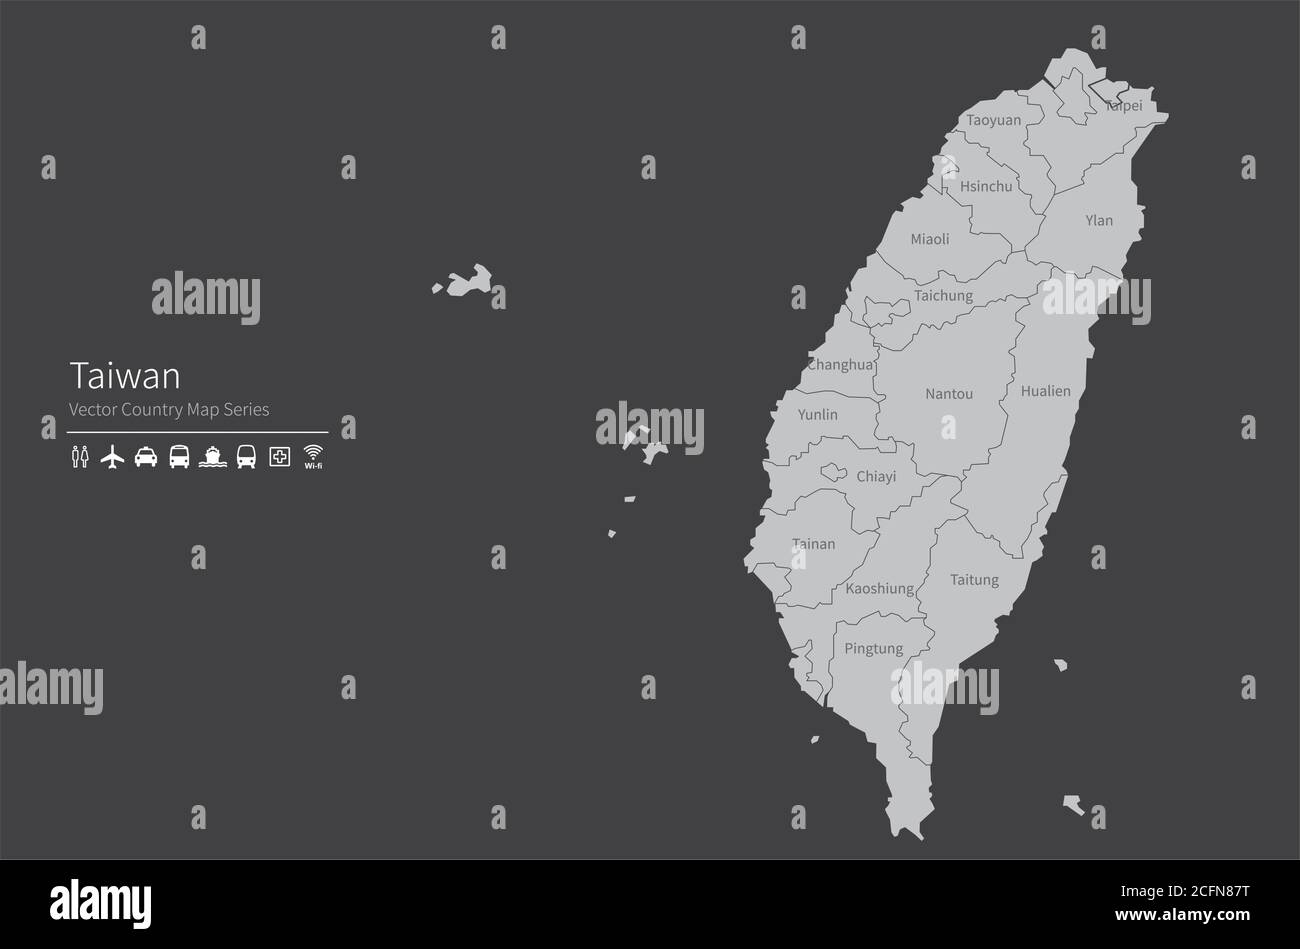 Taiwan-Karte. Nationale Karte der Welt. Grau gefärbte Länder Kartenserie. Stock Vektor